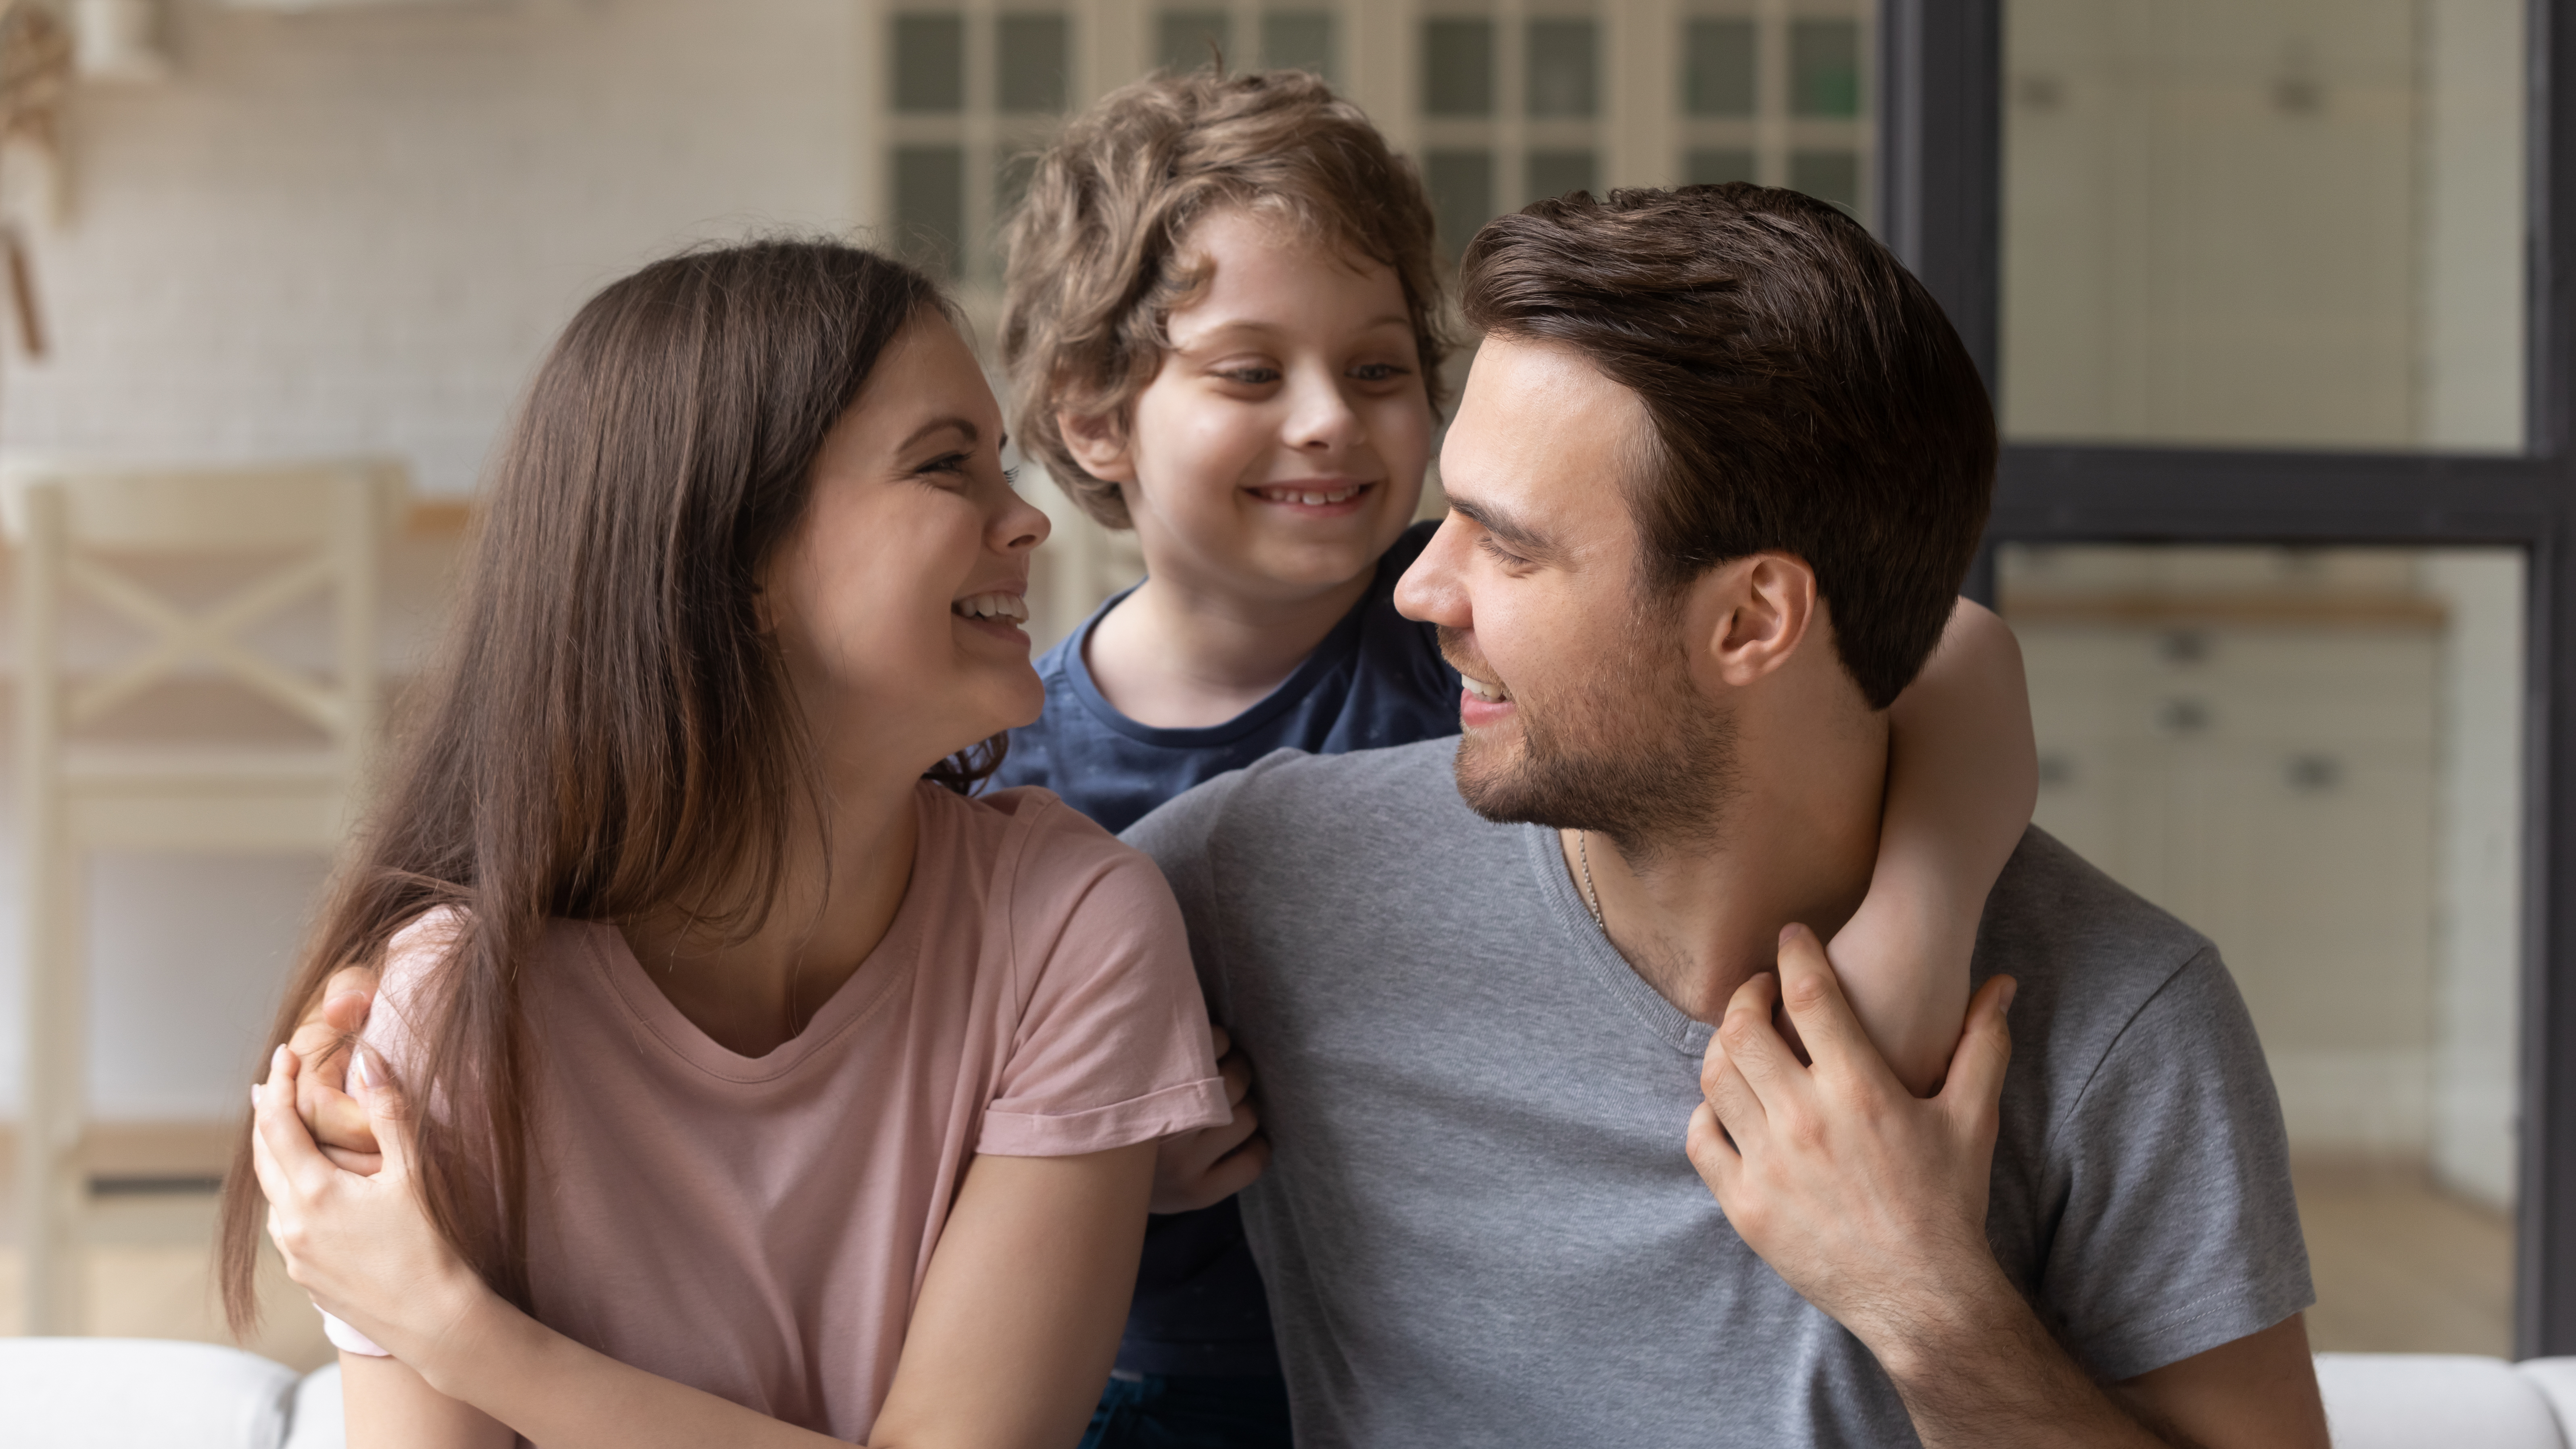 Happy parents | Shutterstock